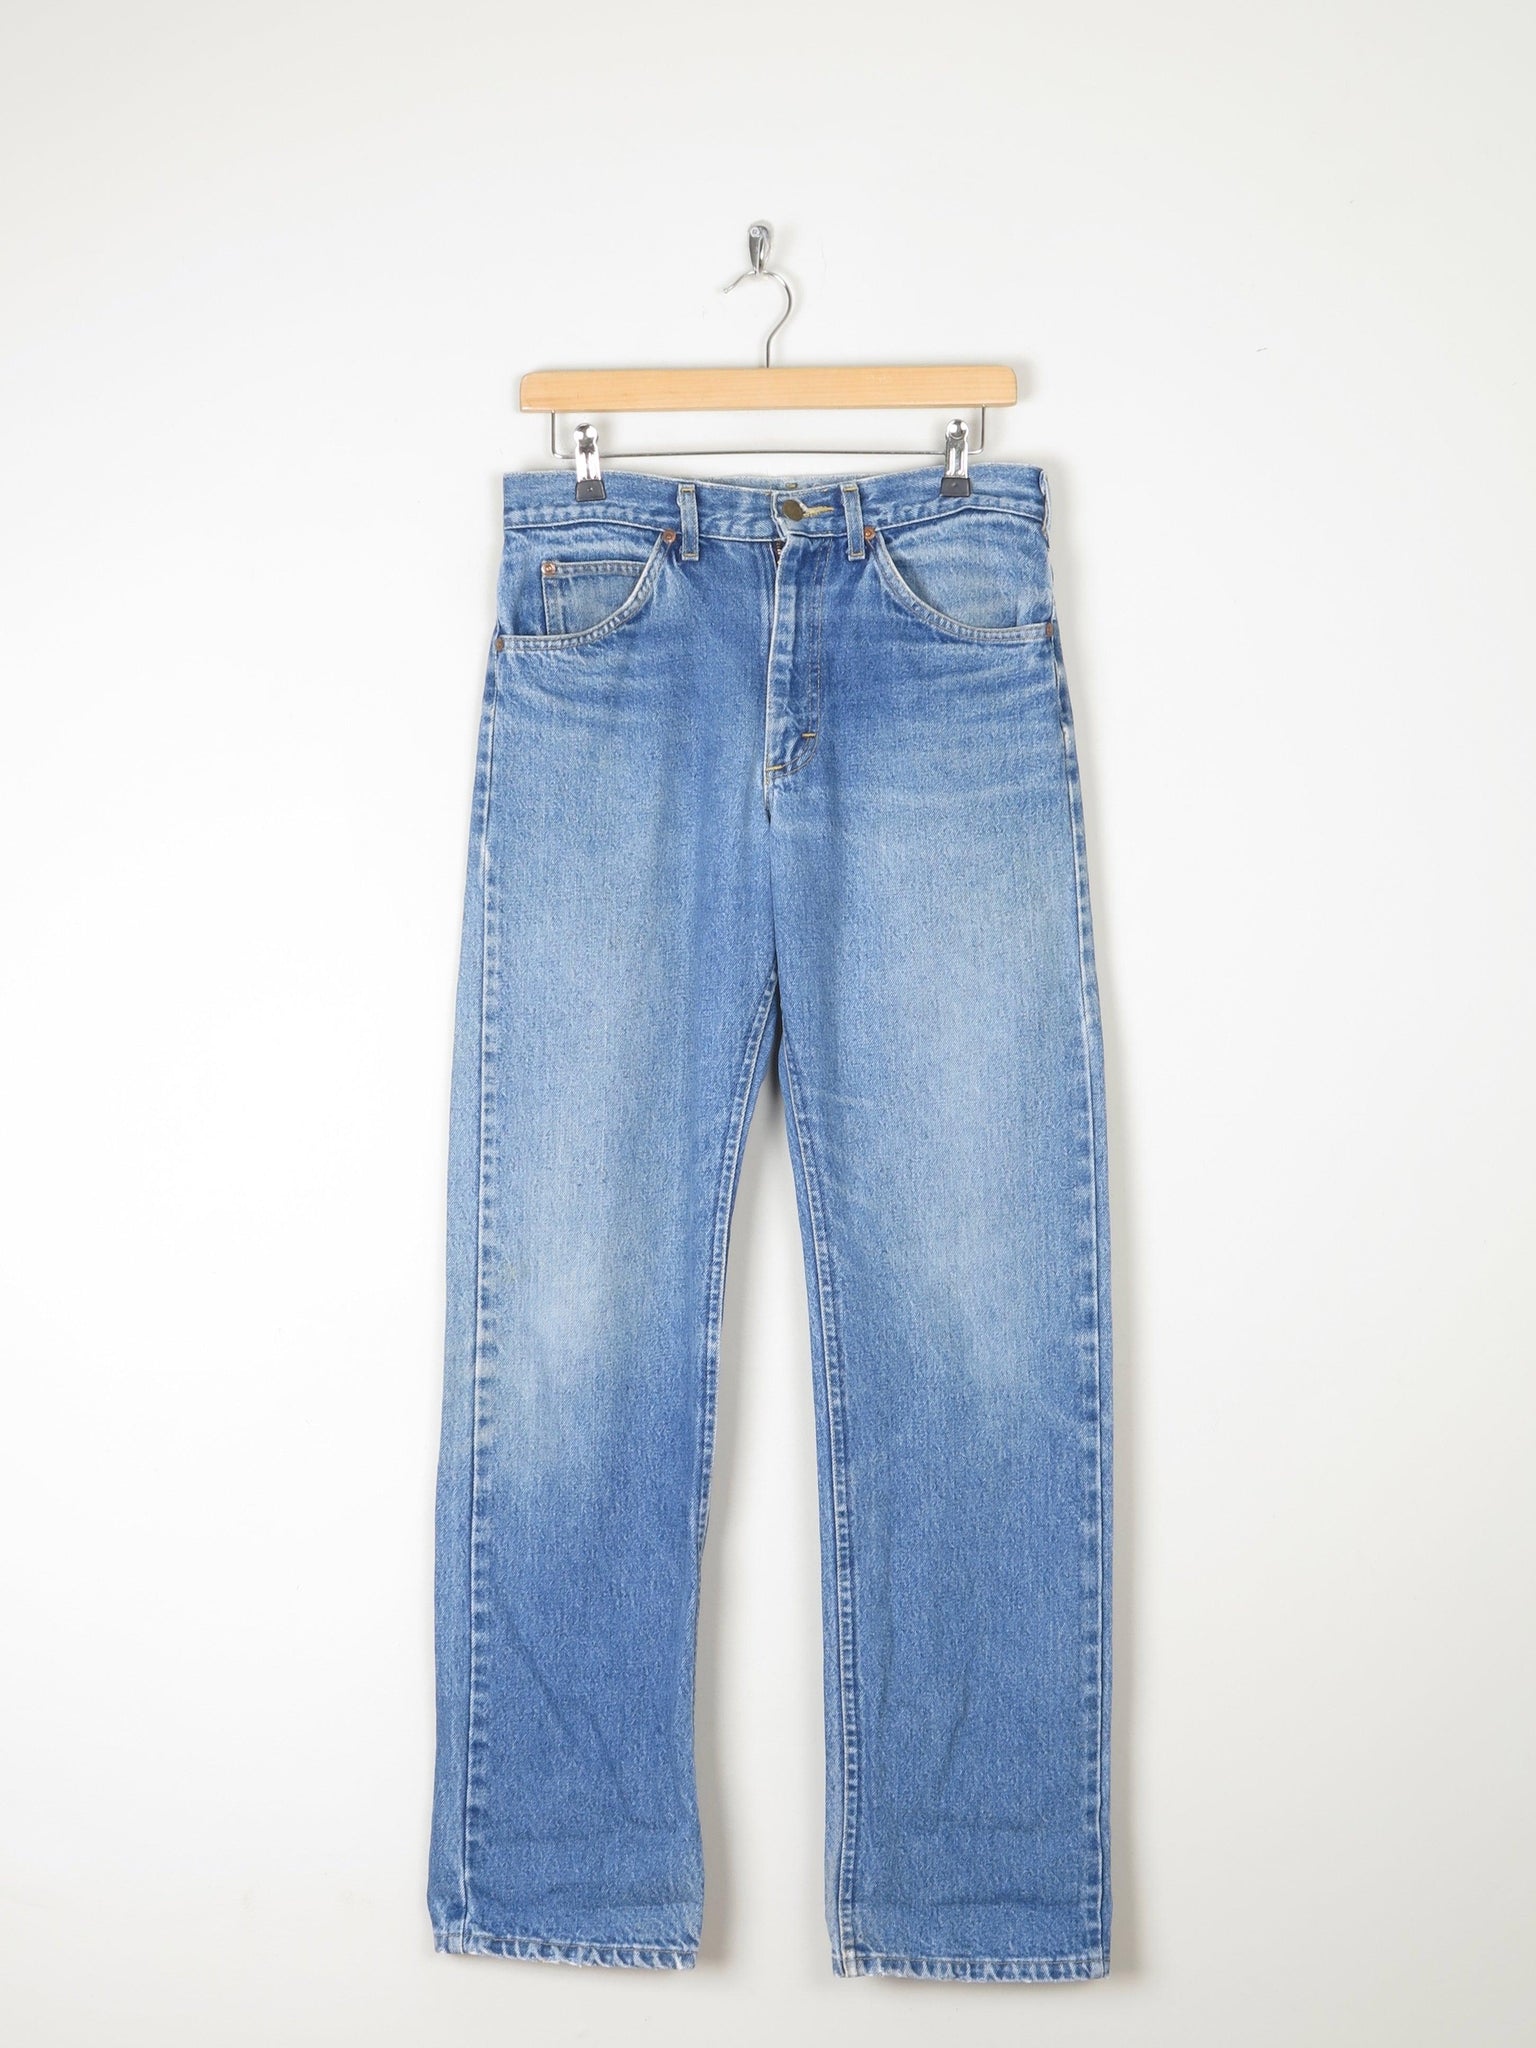 Men's Fit Vintage Lee Blue Denim Jeans Relaxed Fit Jeans 31"/34L - The Harlequin